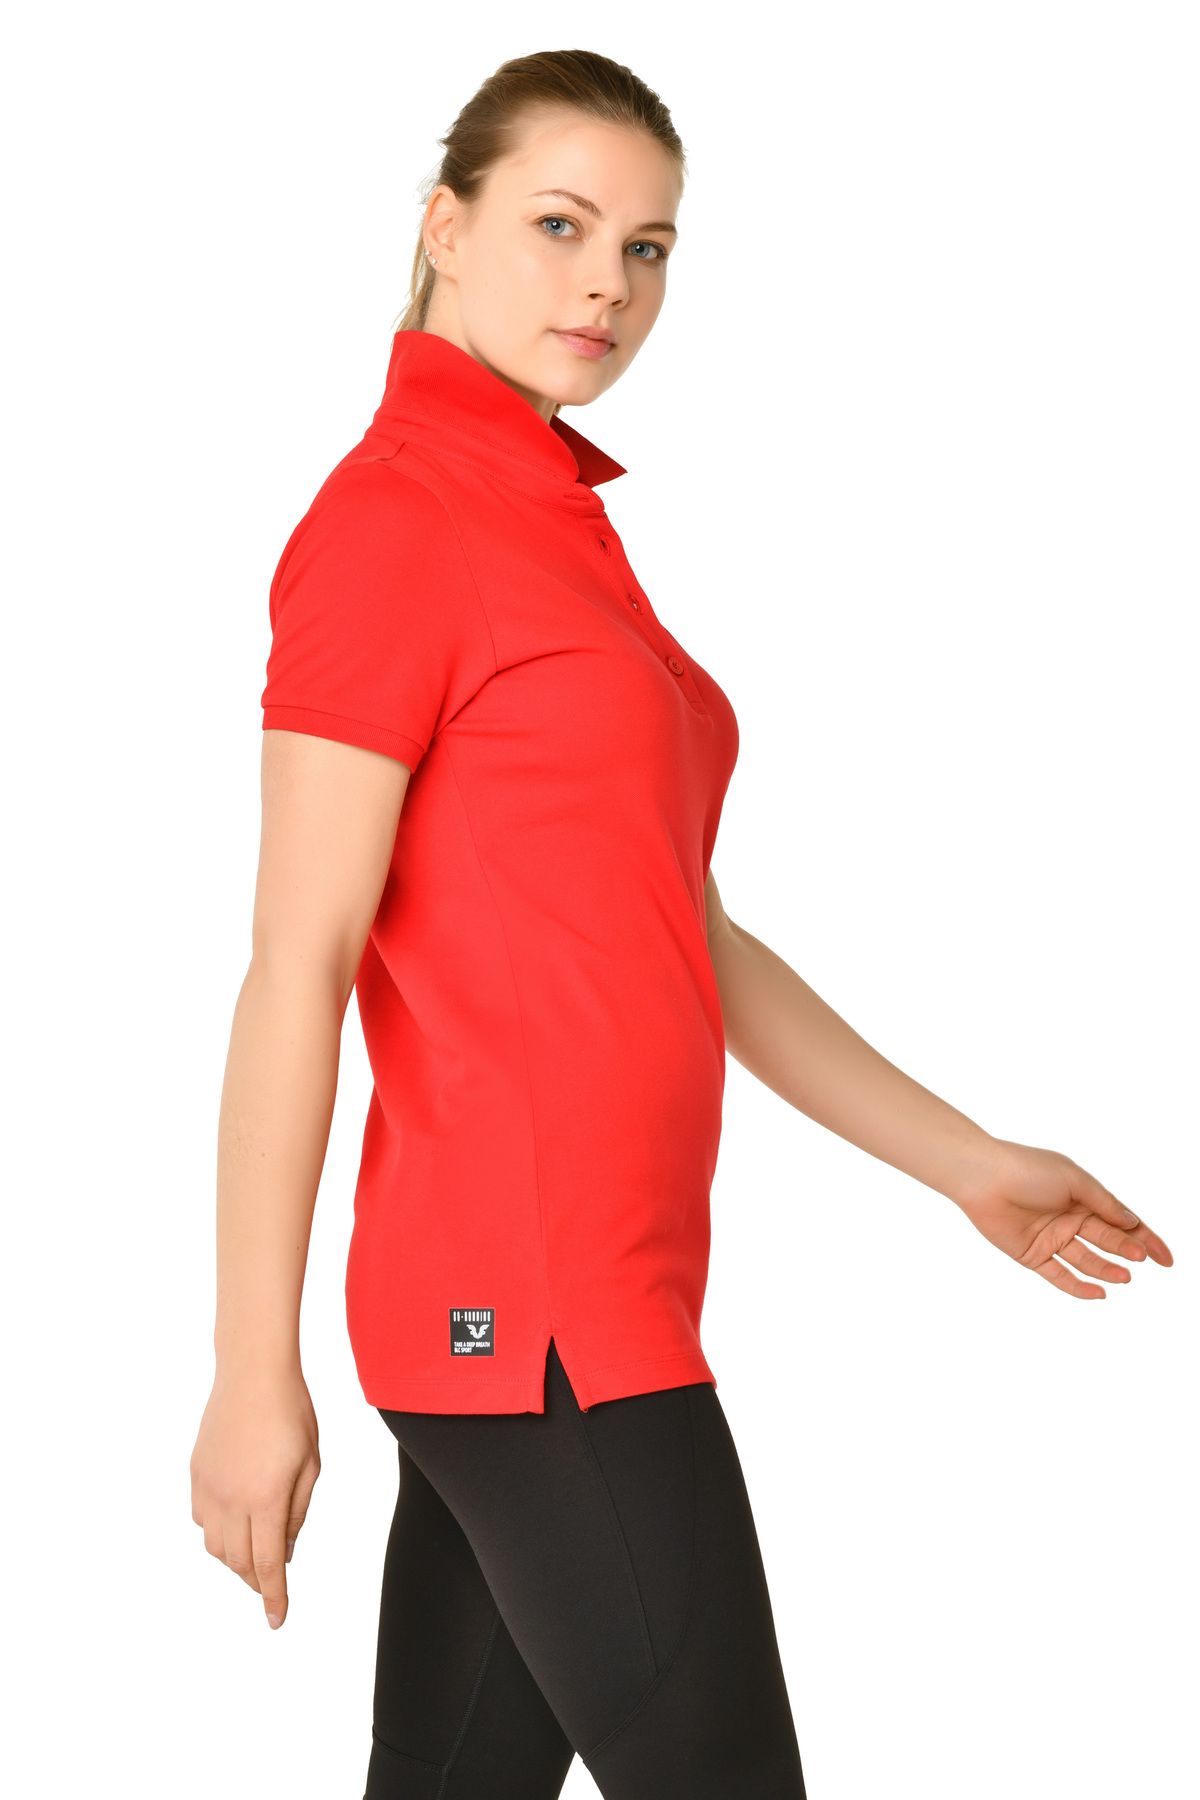 bilcee Kadın Kırmızı Pamuklu Polo Yaka Basic Düz Renk Kısa Kollu Günlük Ve Spor Tişört 8719